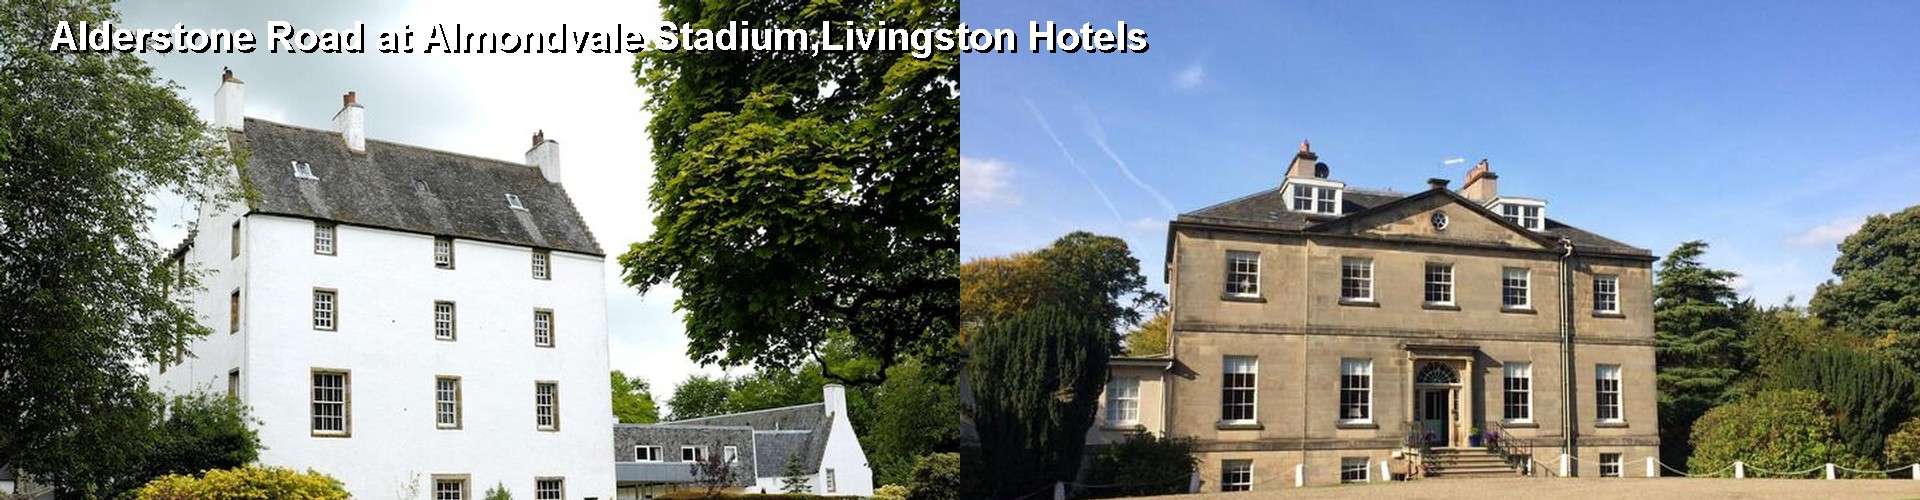 5 Best Hotels near Alderstone Road at Almondvale Stadium,Livingston